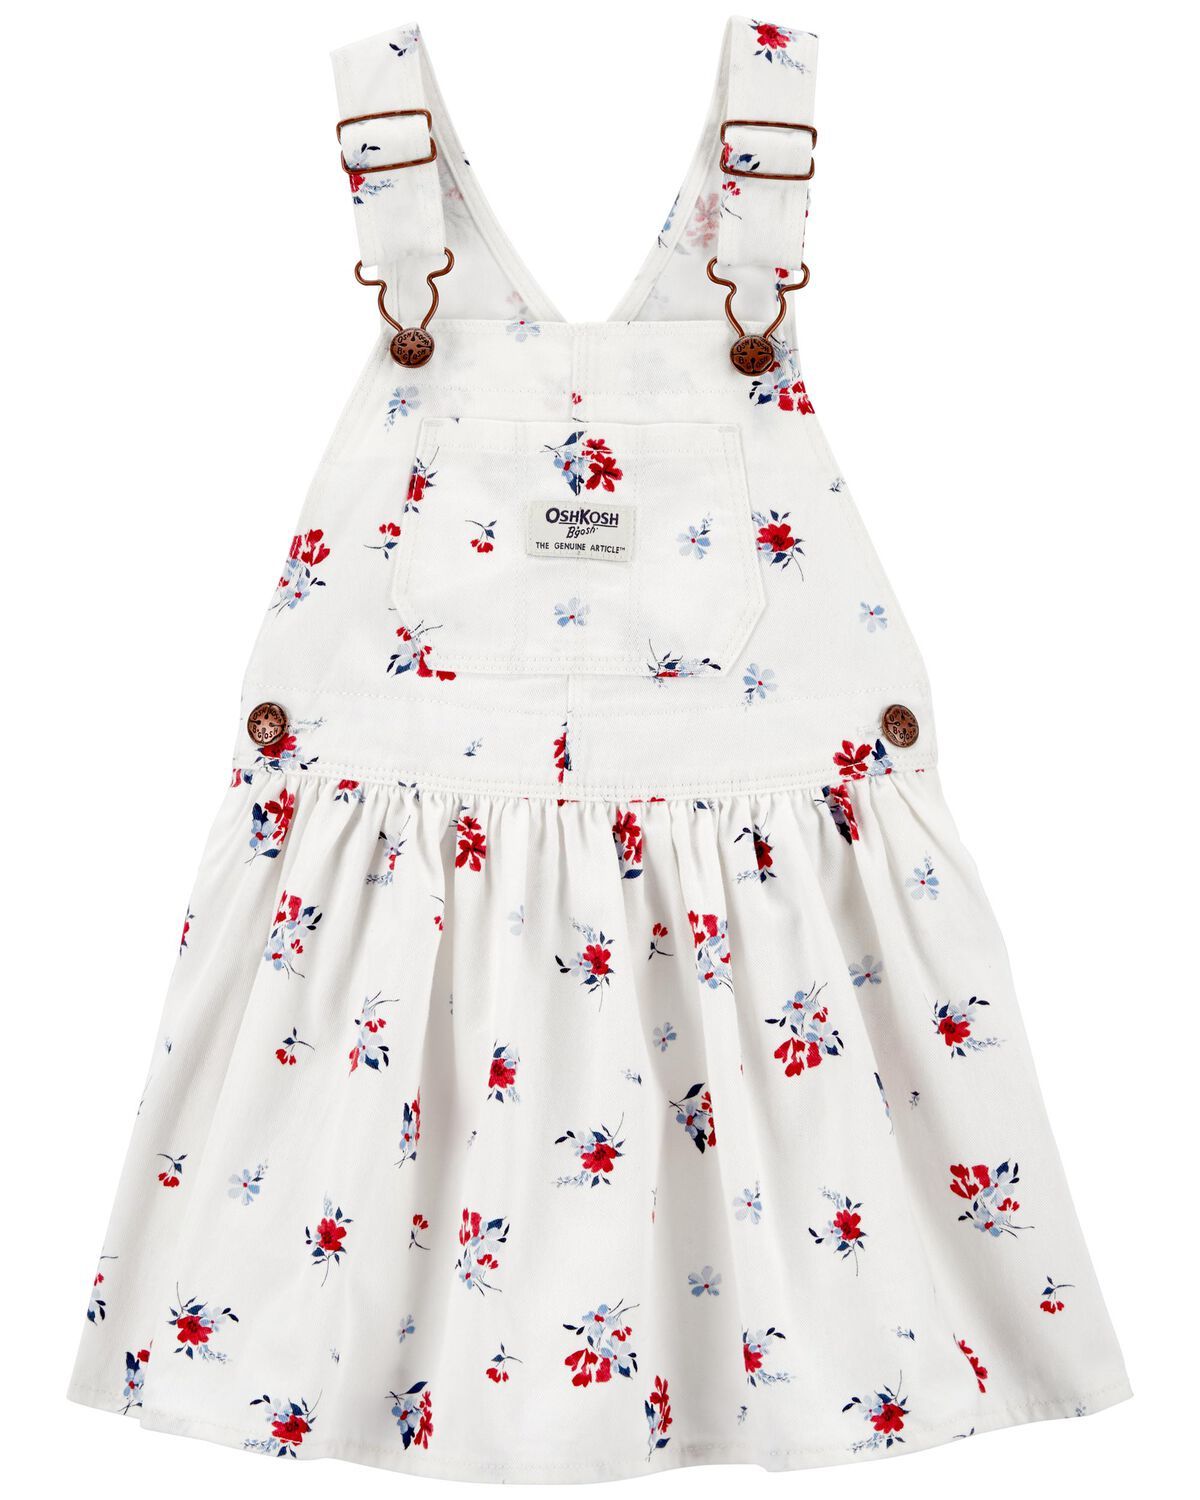 White Toddler Floral Print Jumper Dress | oshkosh.com | OshKosh B'gosh